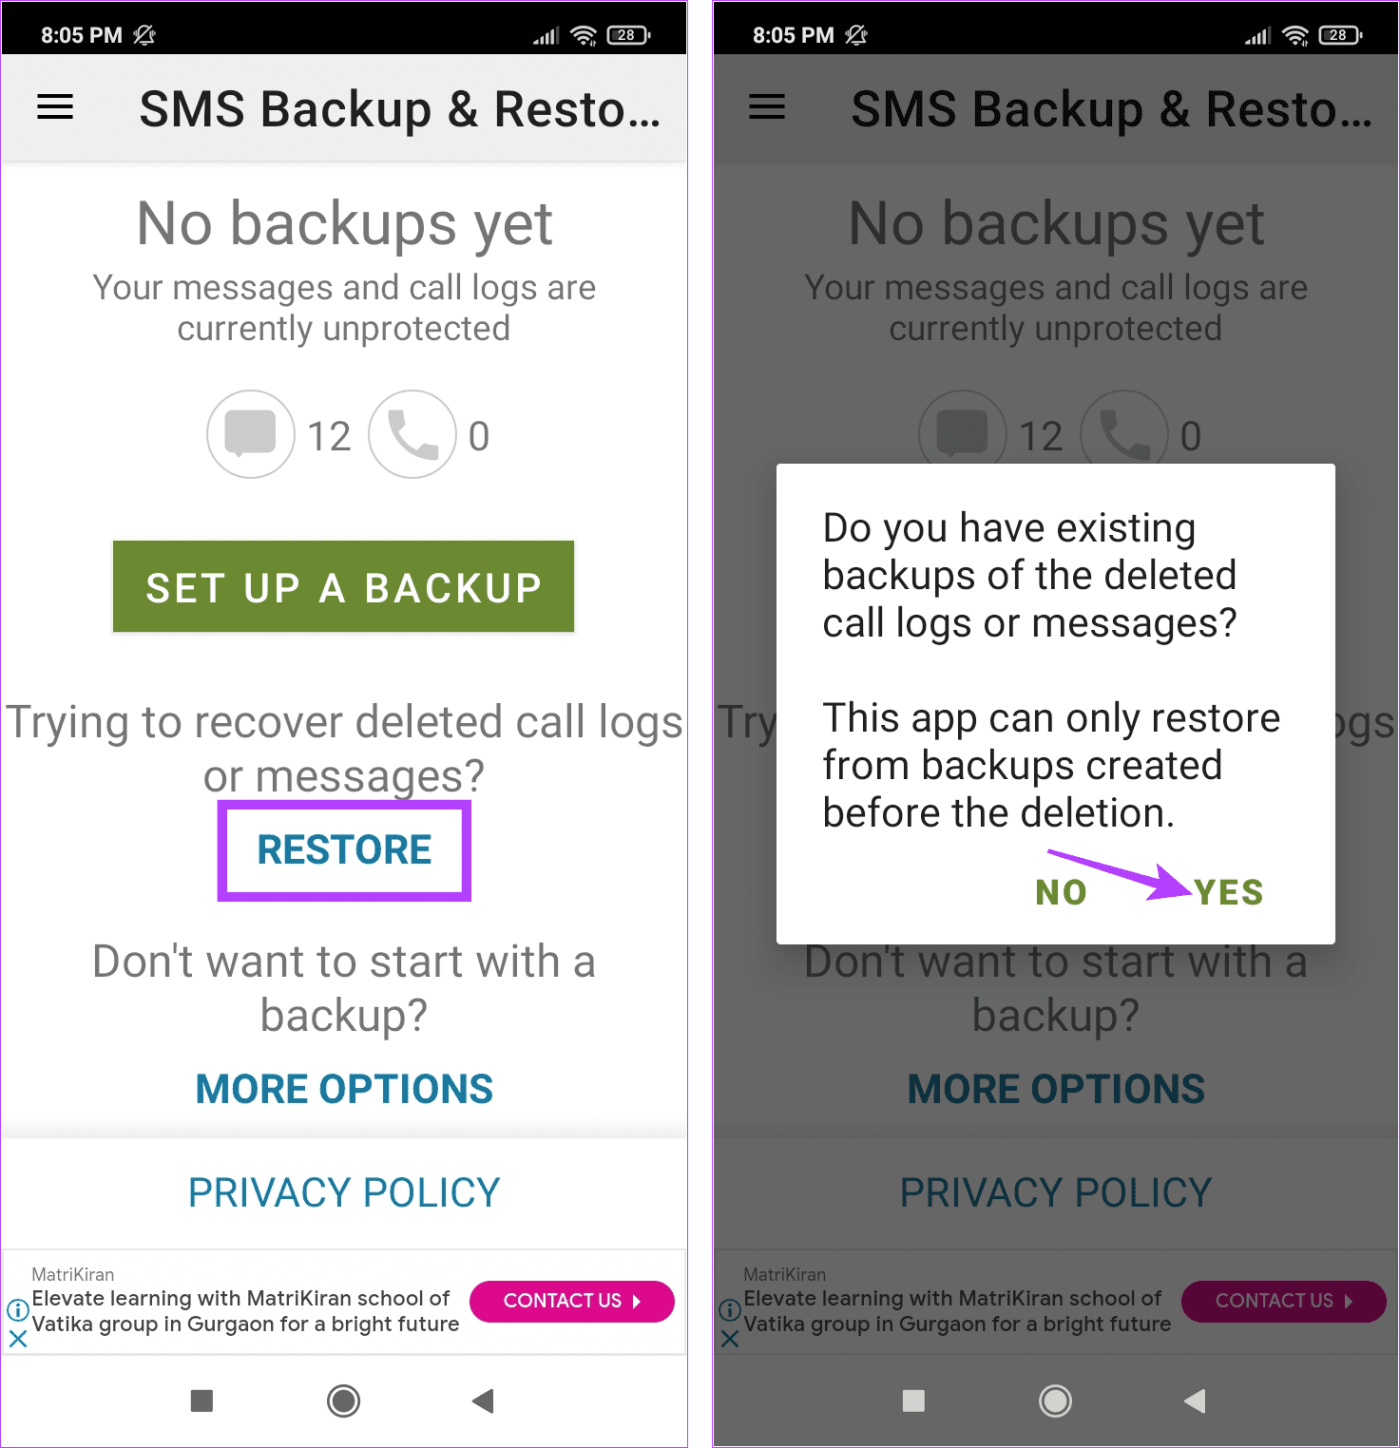 Jak przesyłać wiadomości tekstowe (SMS) z Androida na Androida